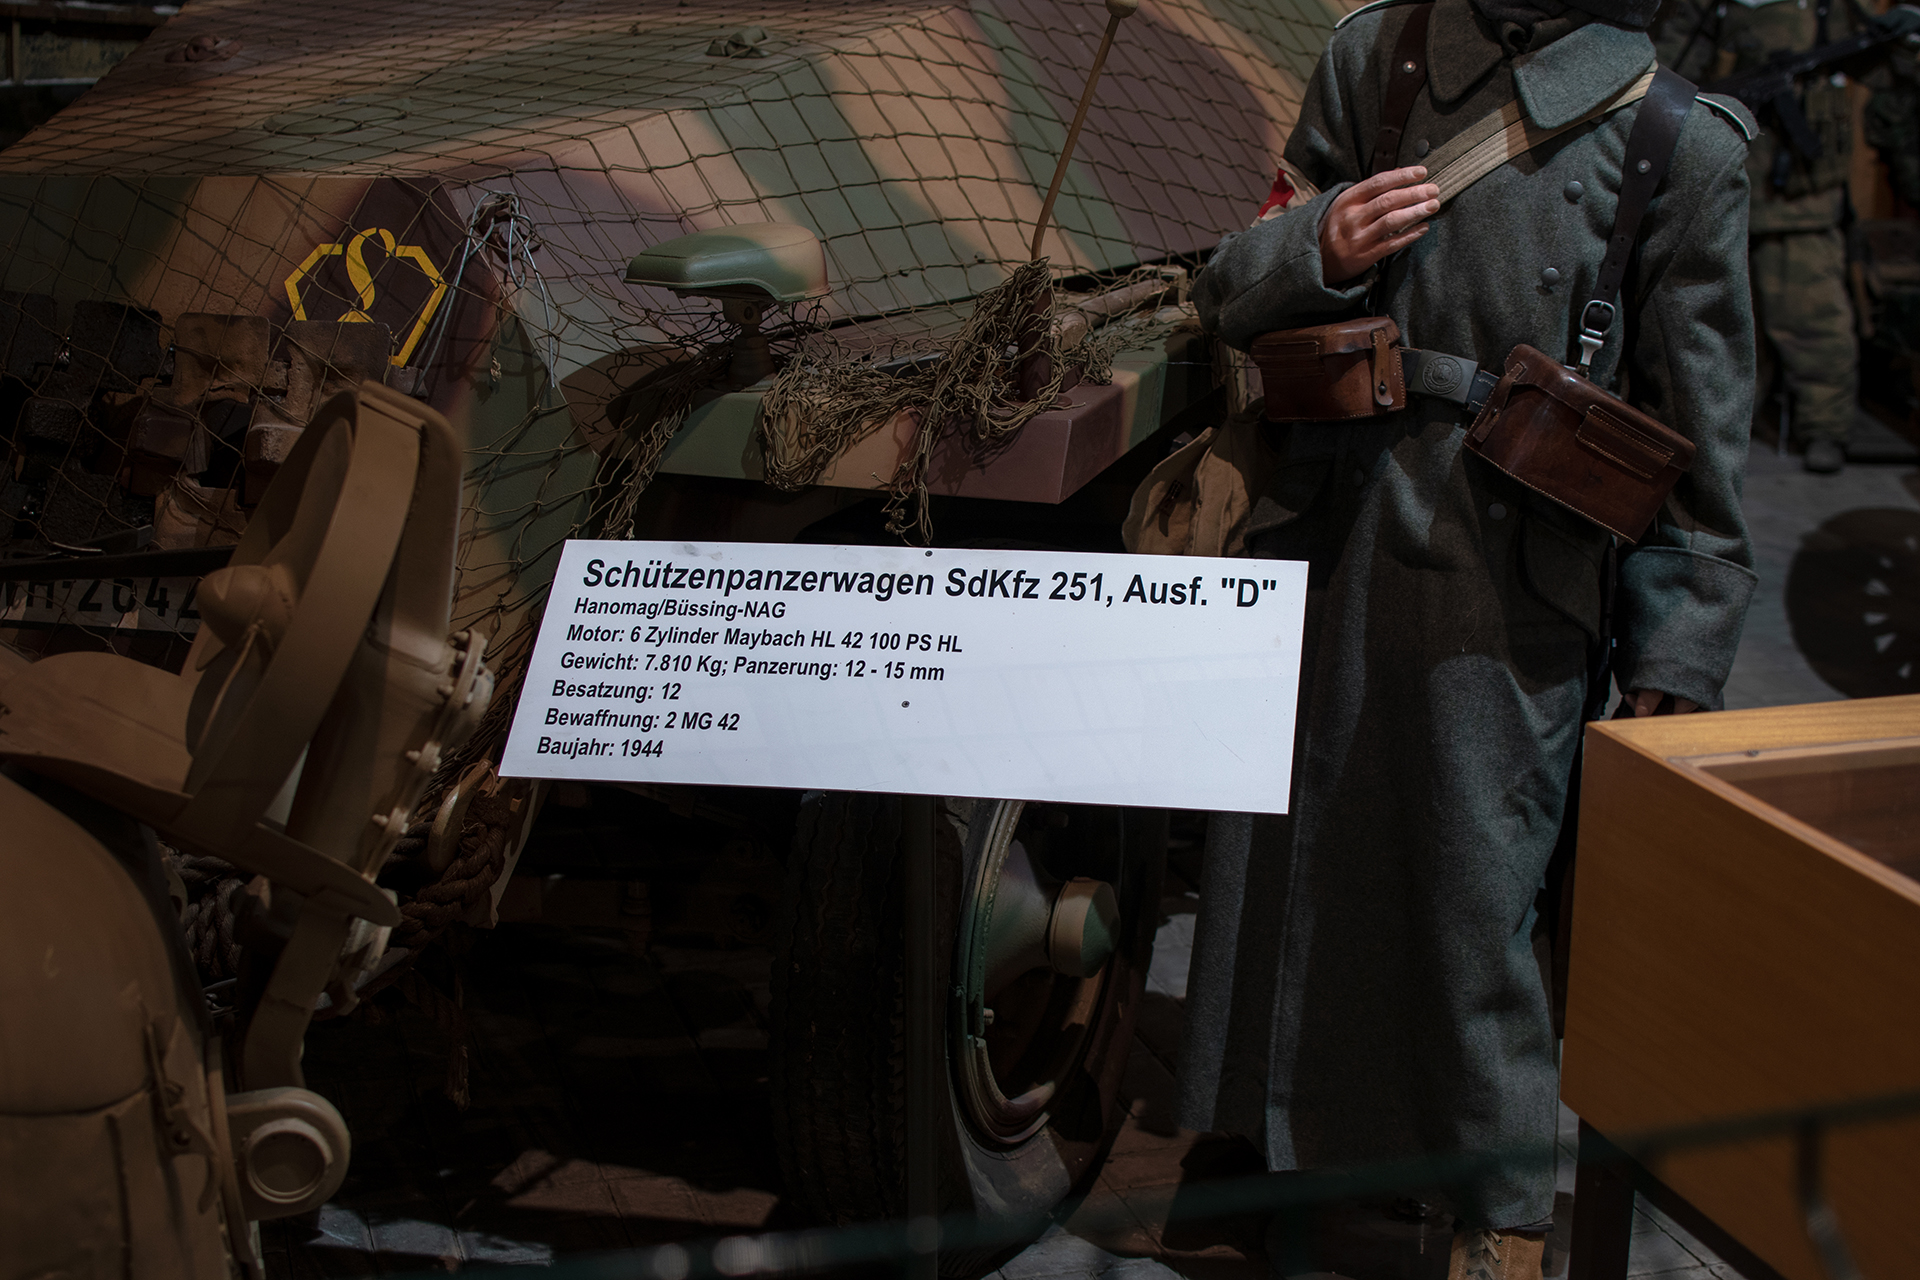 Hanomag Schützenpanzerwagen Sd.Kfz. 251 1944 details - Musée National d'Histoire Militaire, Diekirch